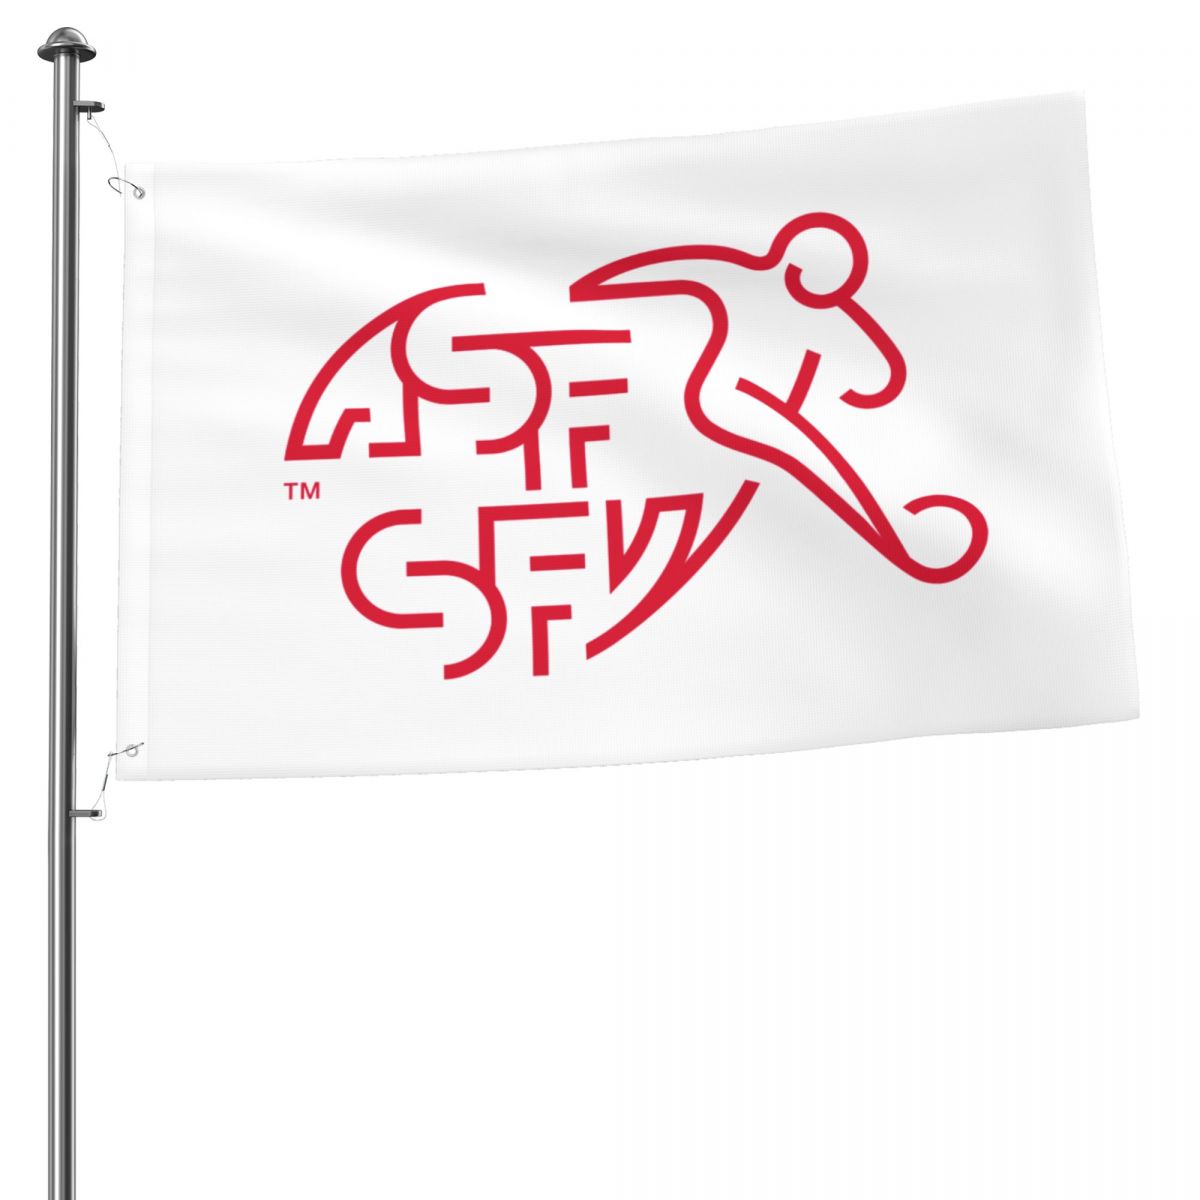 Switzerland National Football Team 2x3 FT UV Resistant Flag